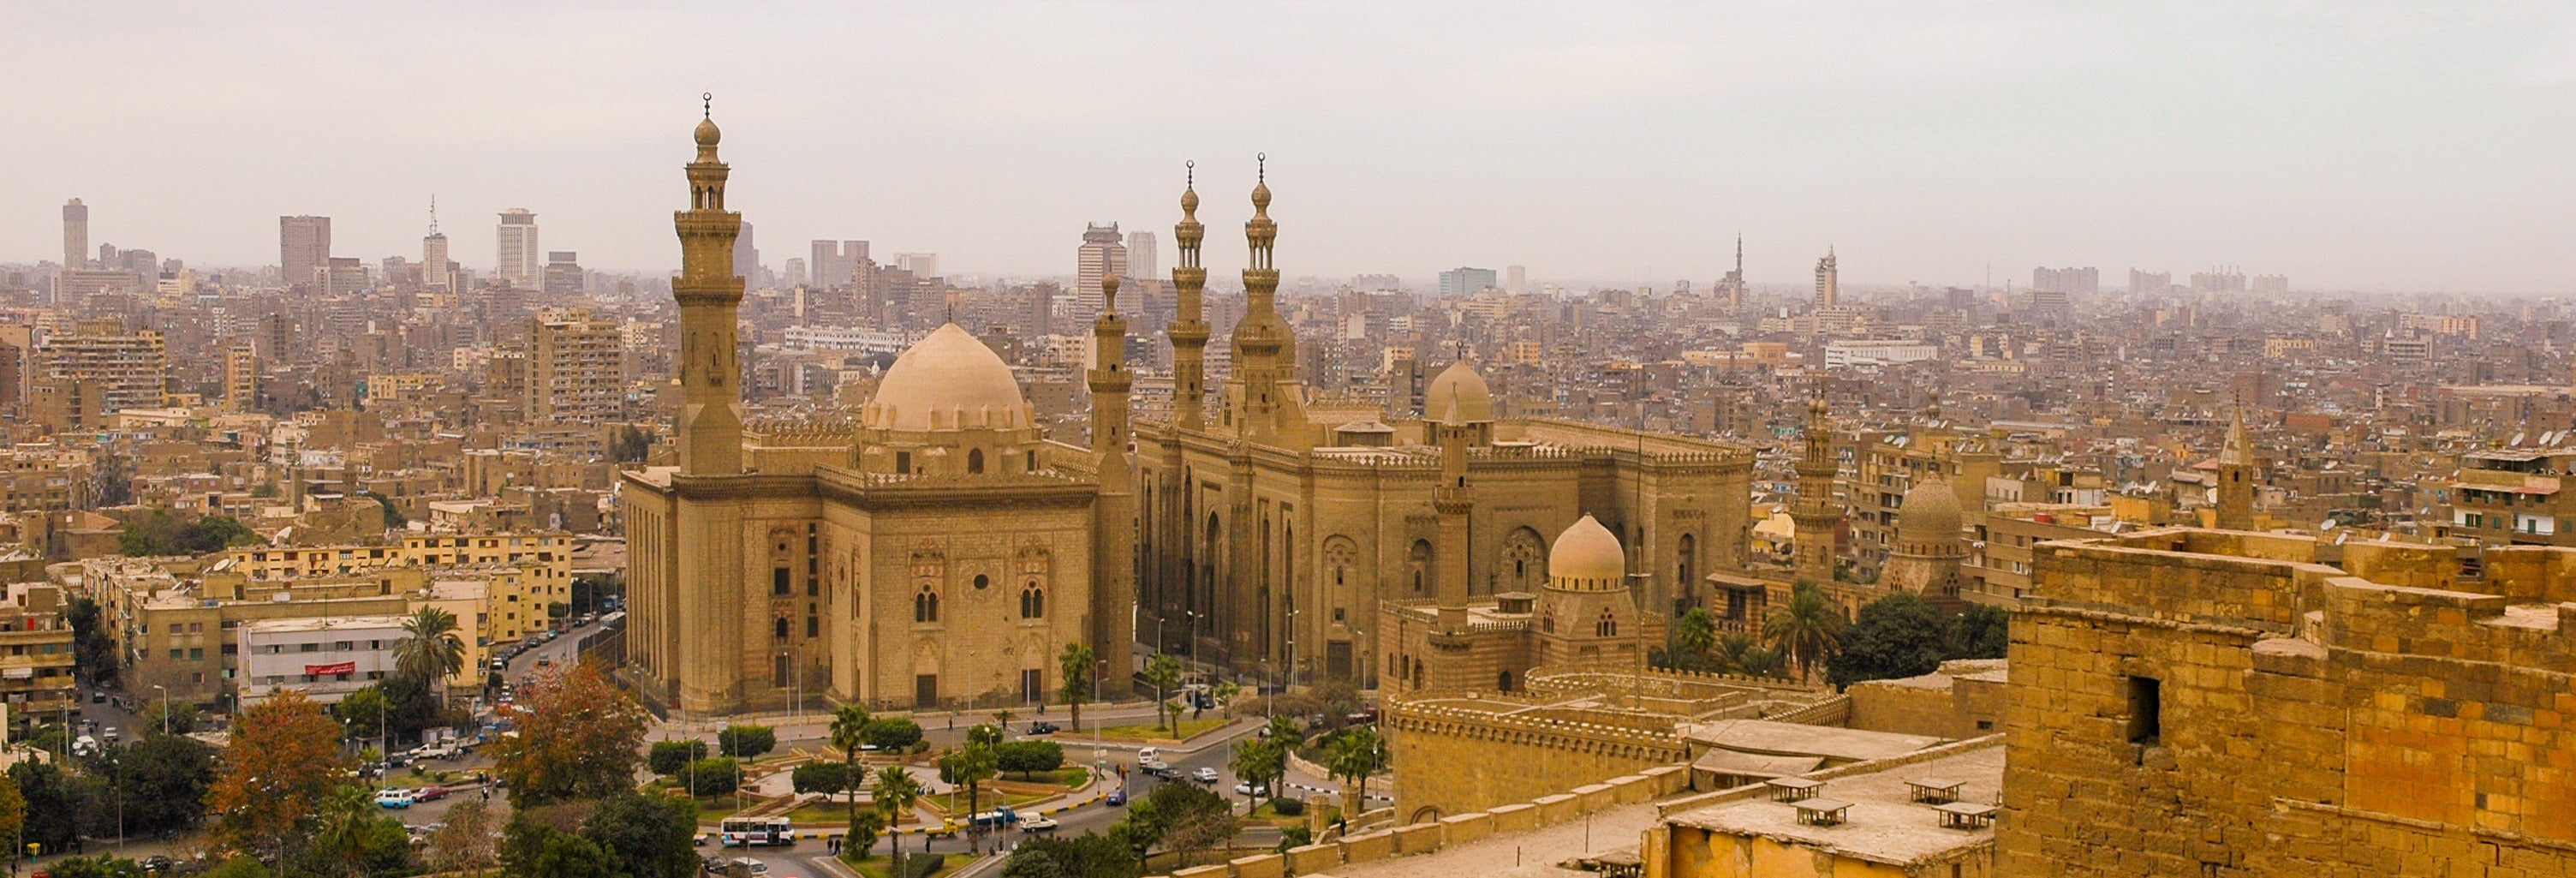 Tour storico per Il Cairo del califfato fatimide